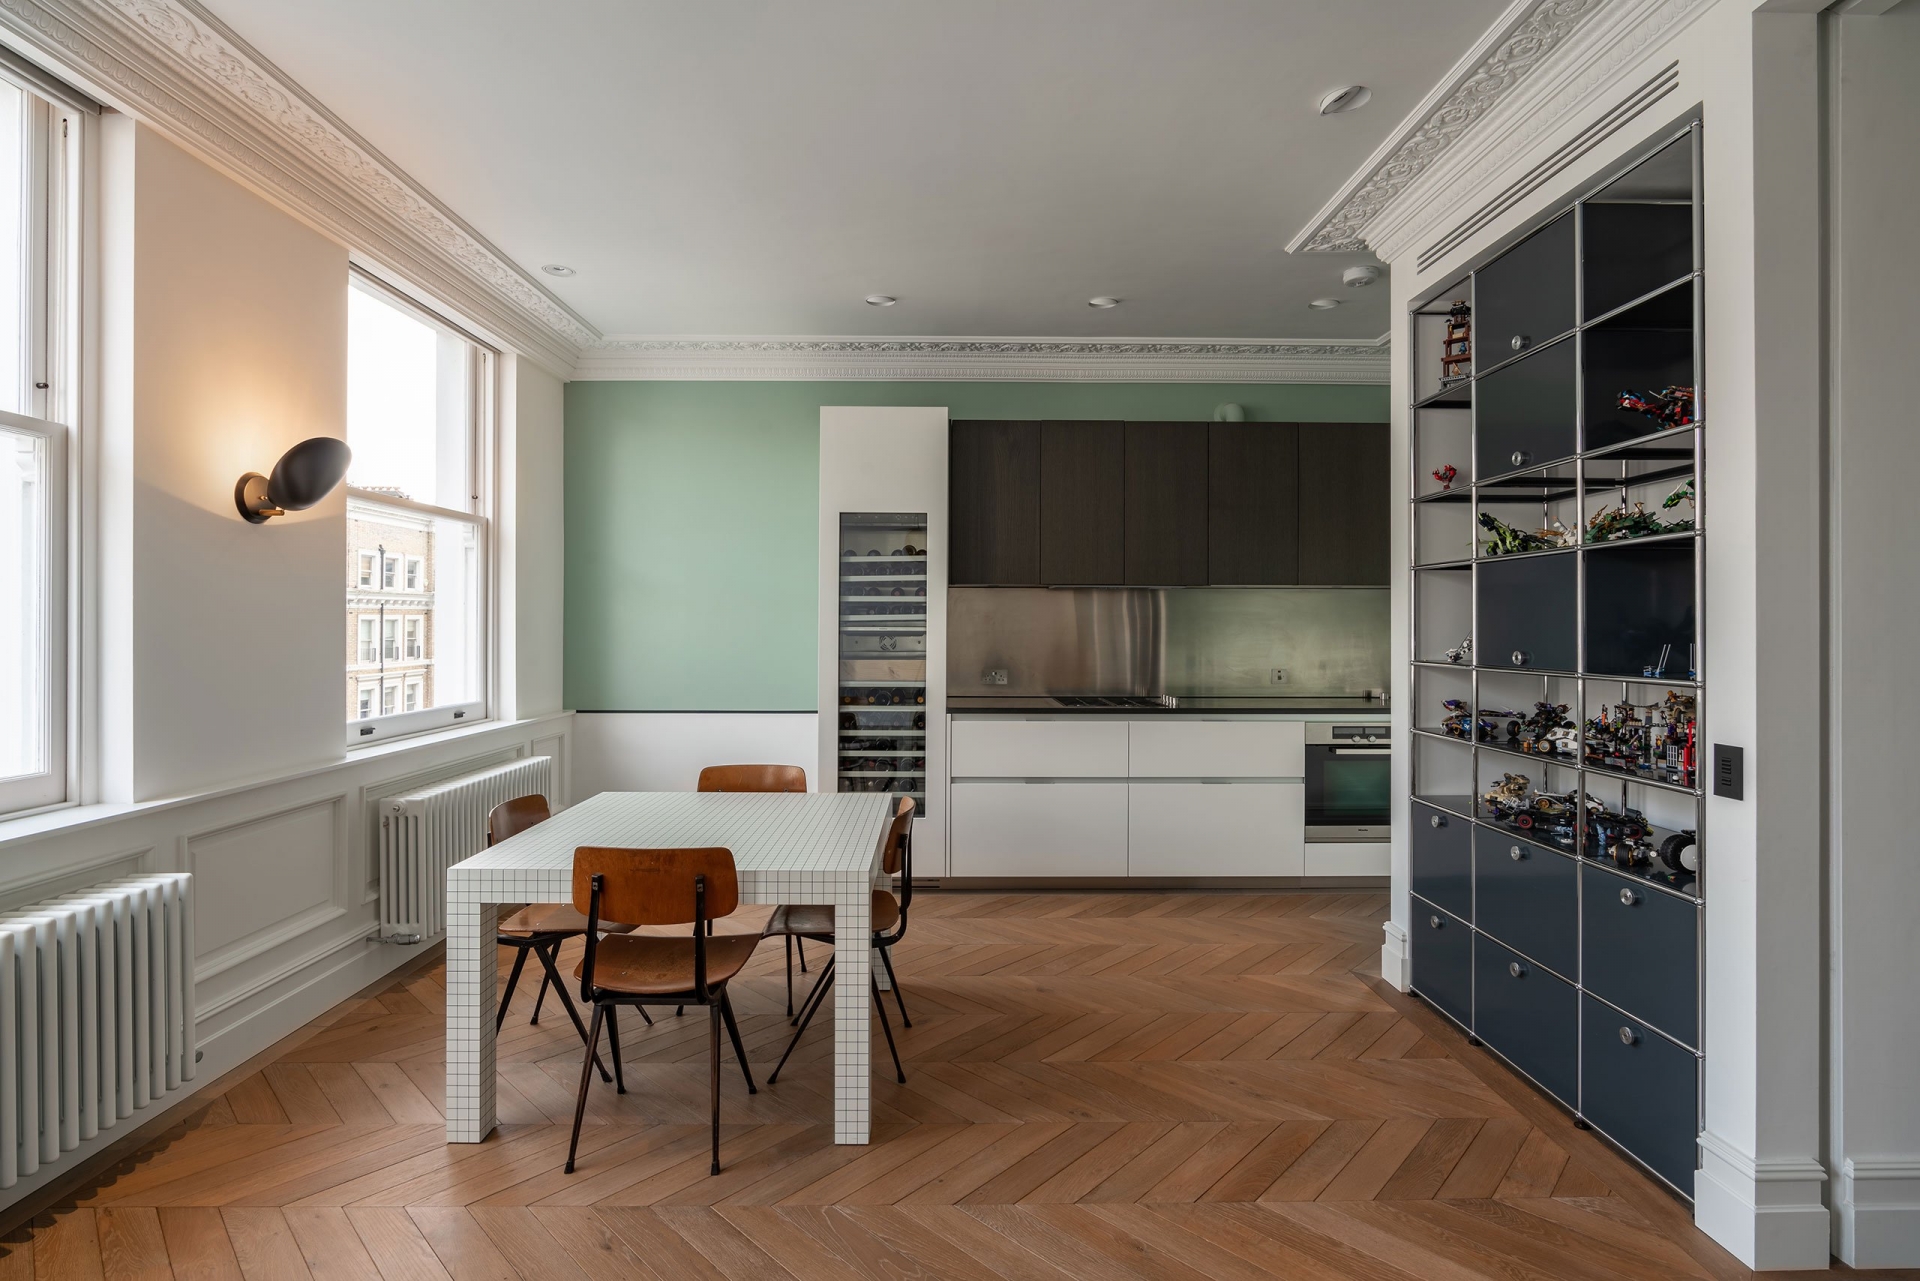 Một phòng bếp kiểu chữ I nhỏ gọn trên nền tường màu xanh lá cây nhạt cho vẻ đẹp trang nhã, bên cạnh là tủ đựng rượu với rất nhiều loại phong phú. 